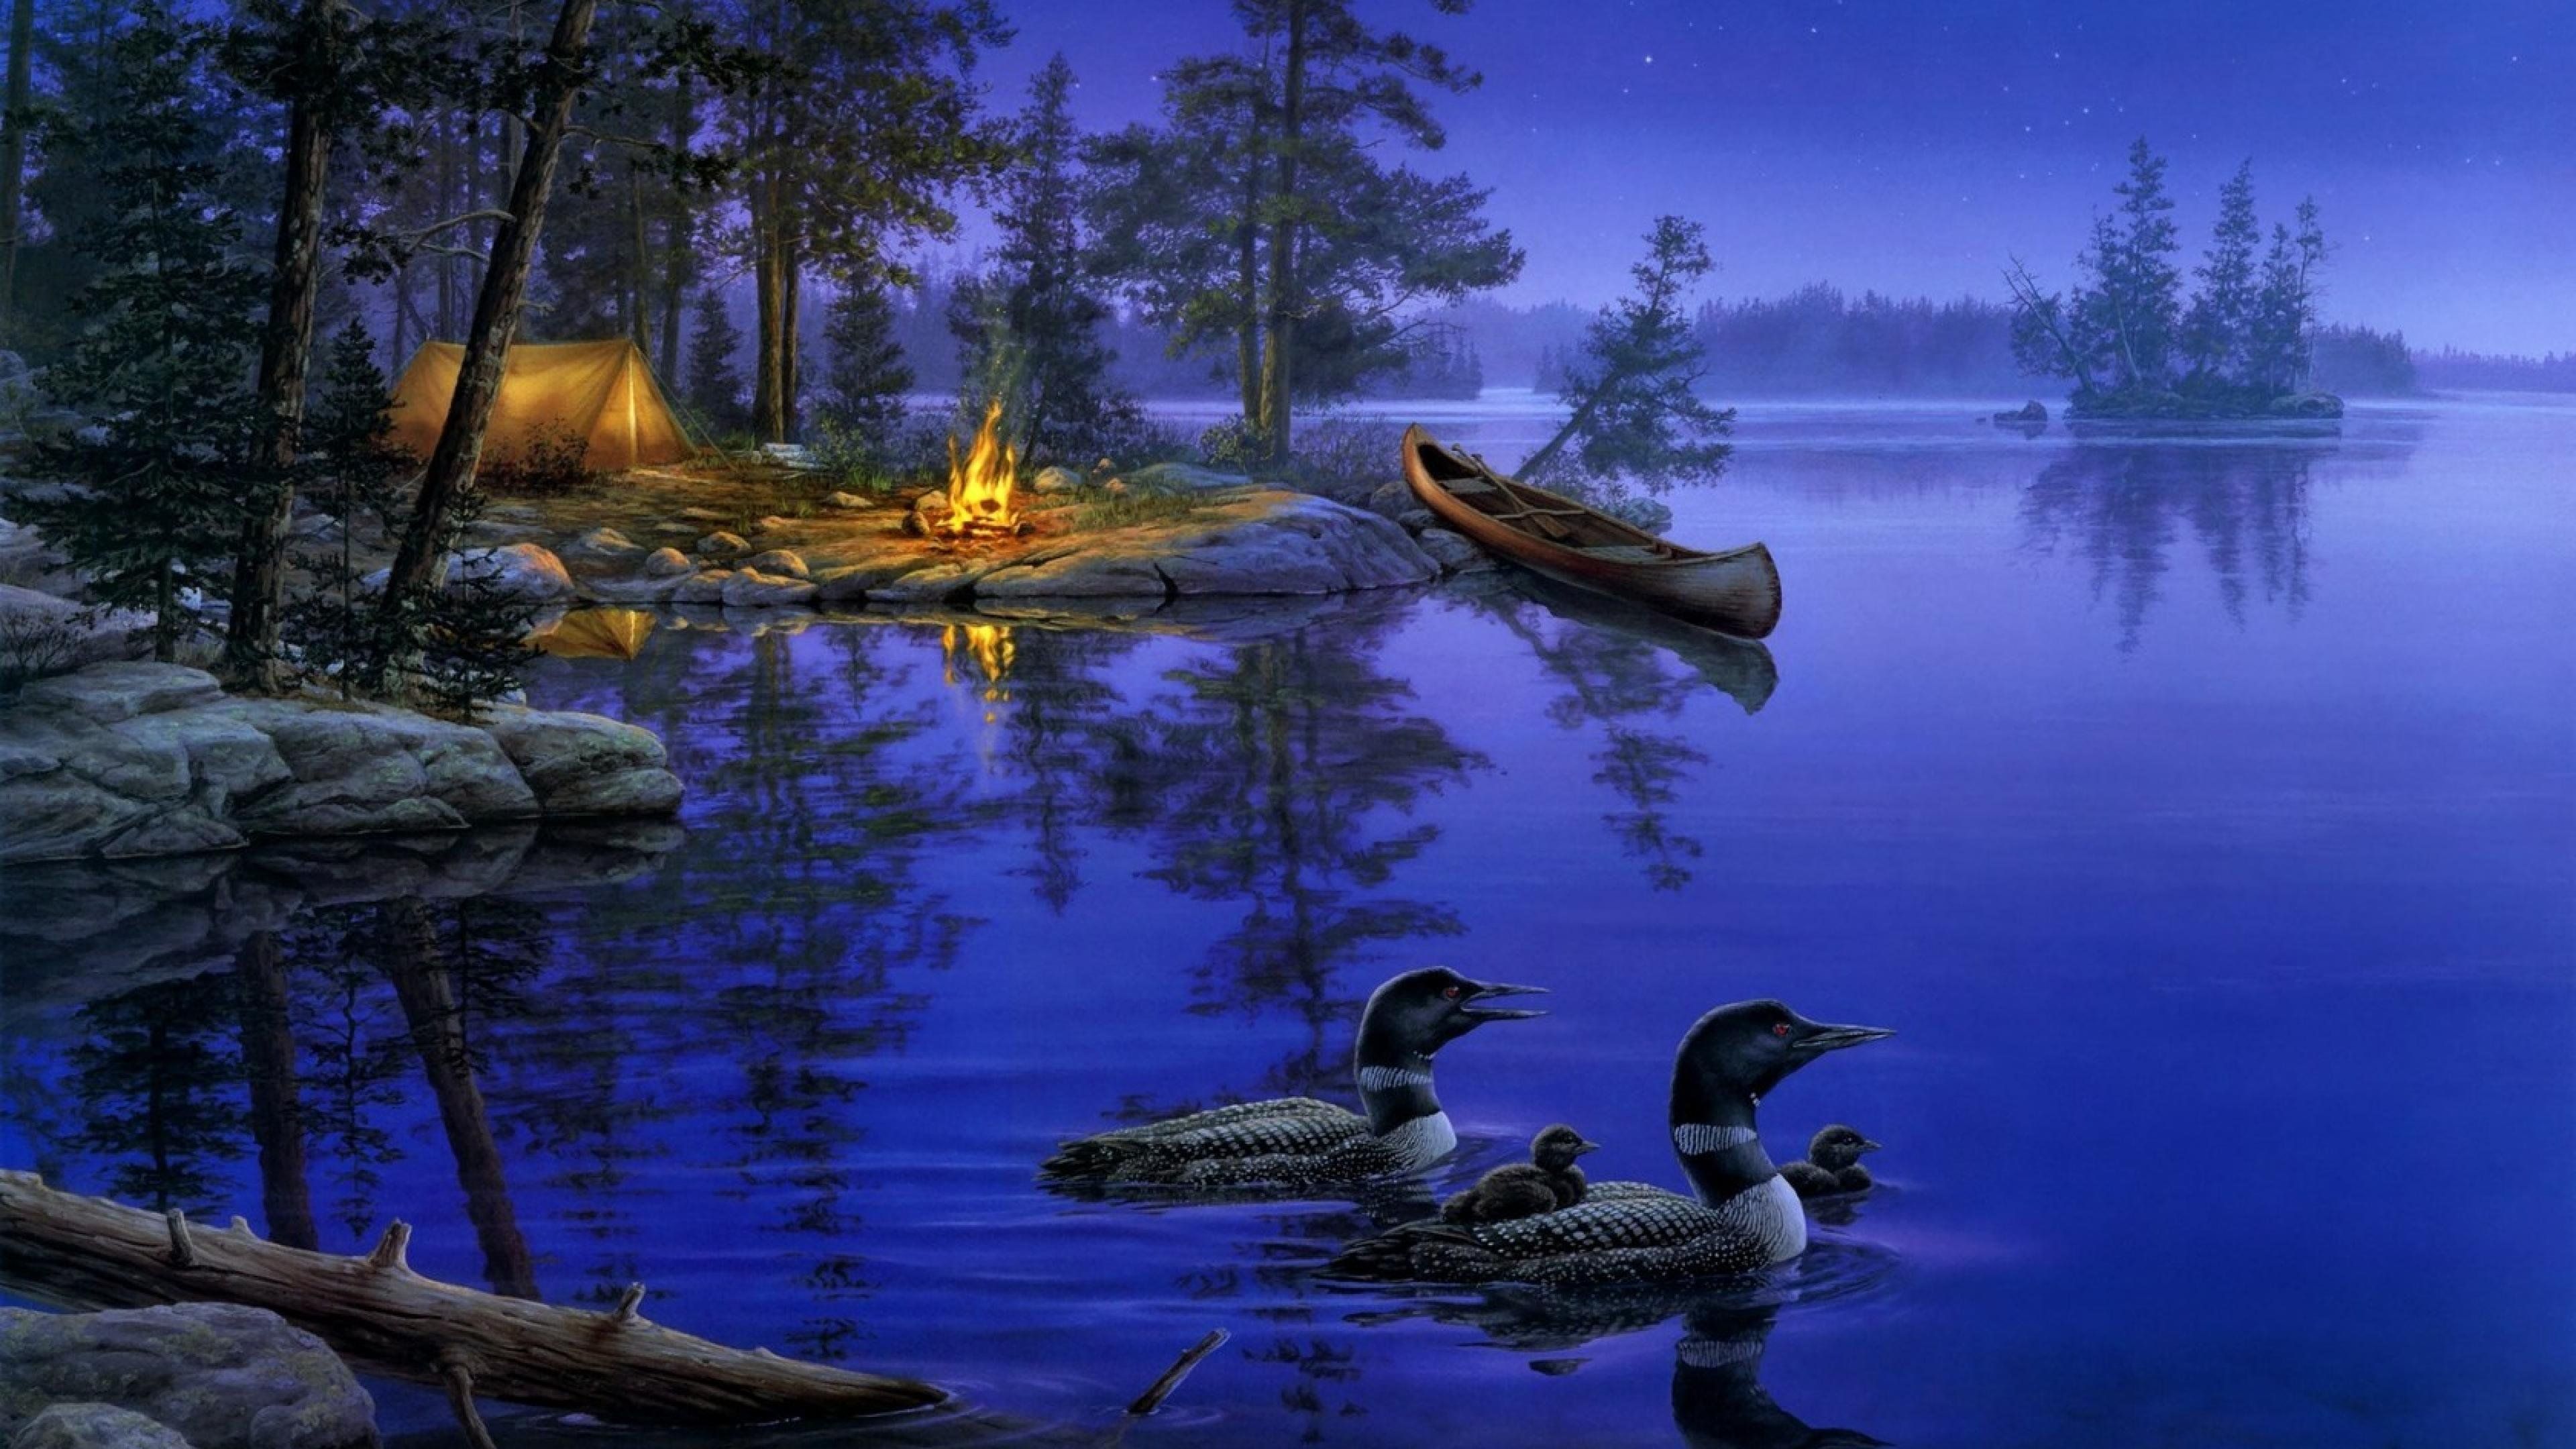 Night Star Forest Lake Ducks Boat Bonfire 4K wallpaper